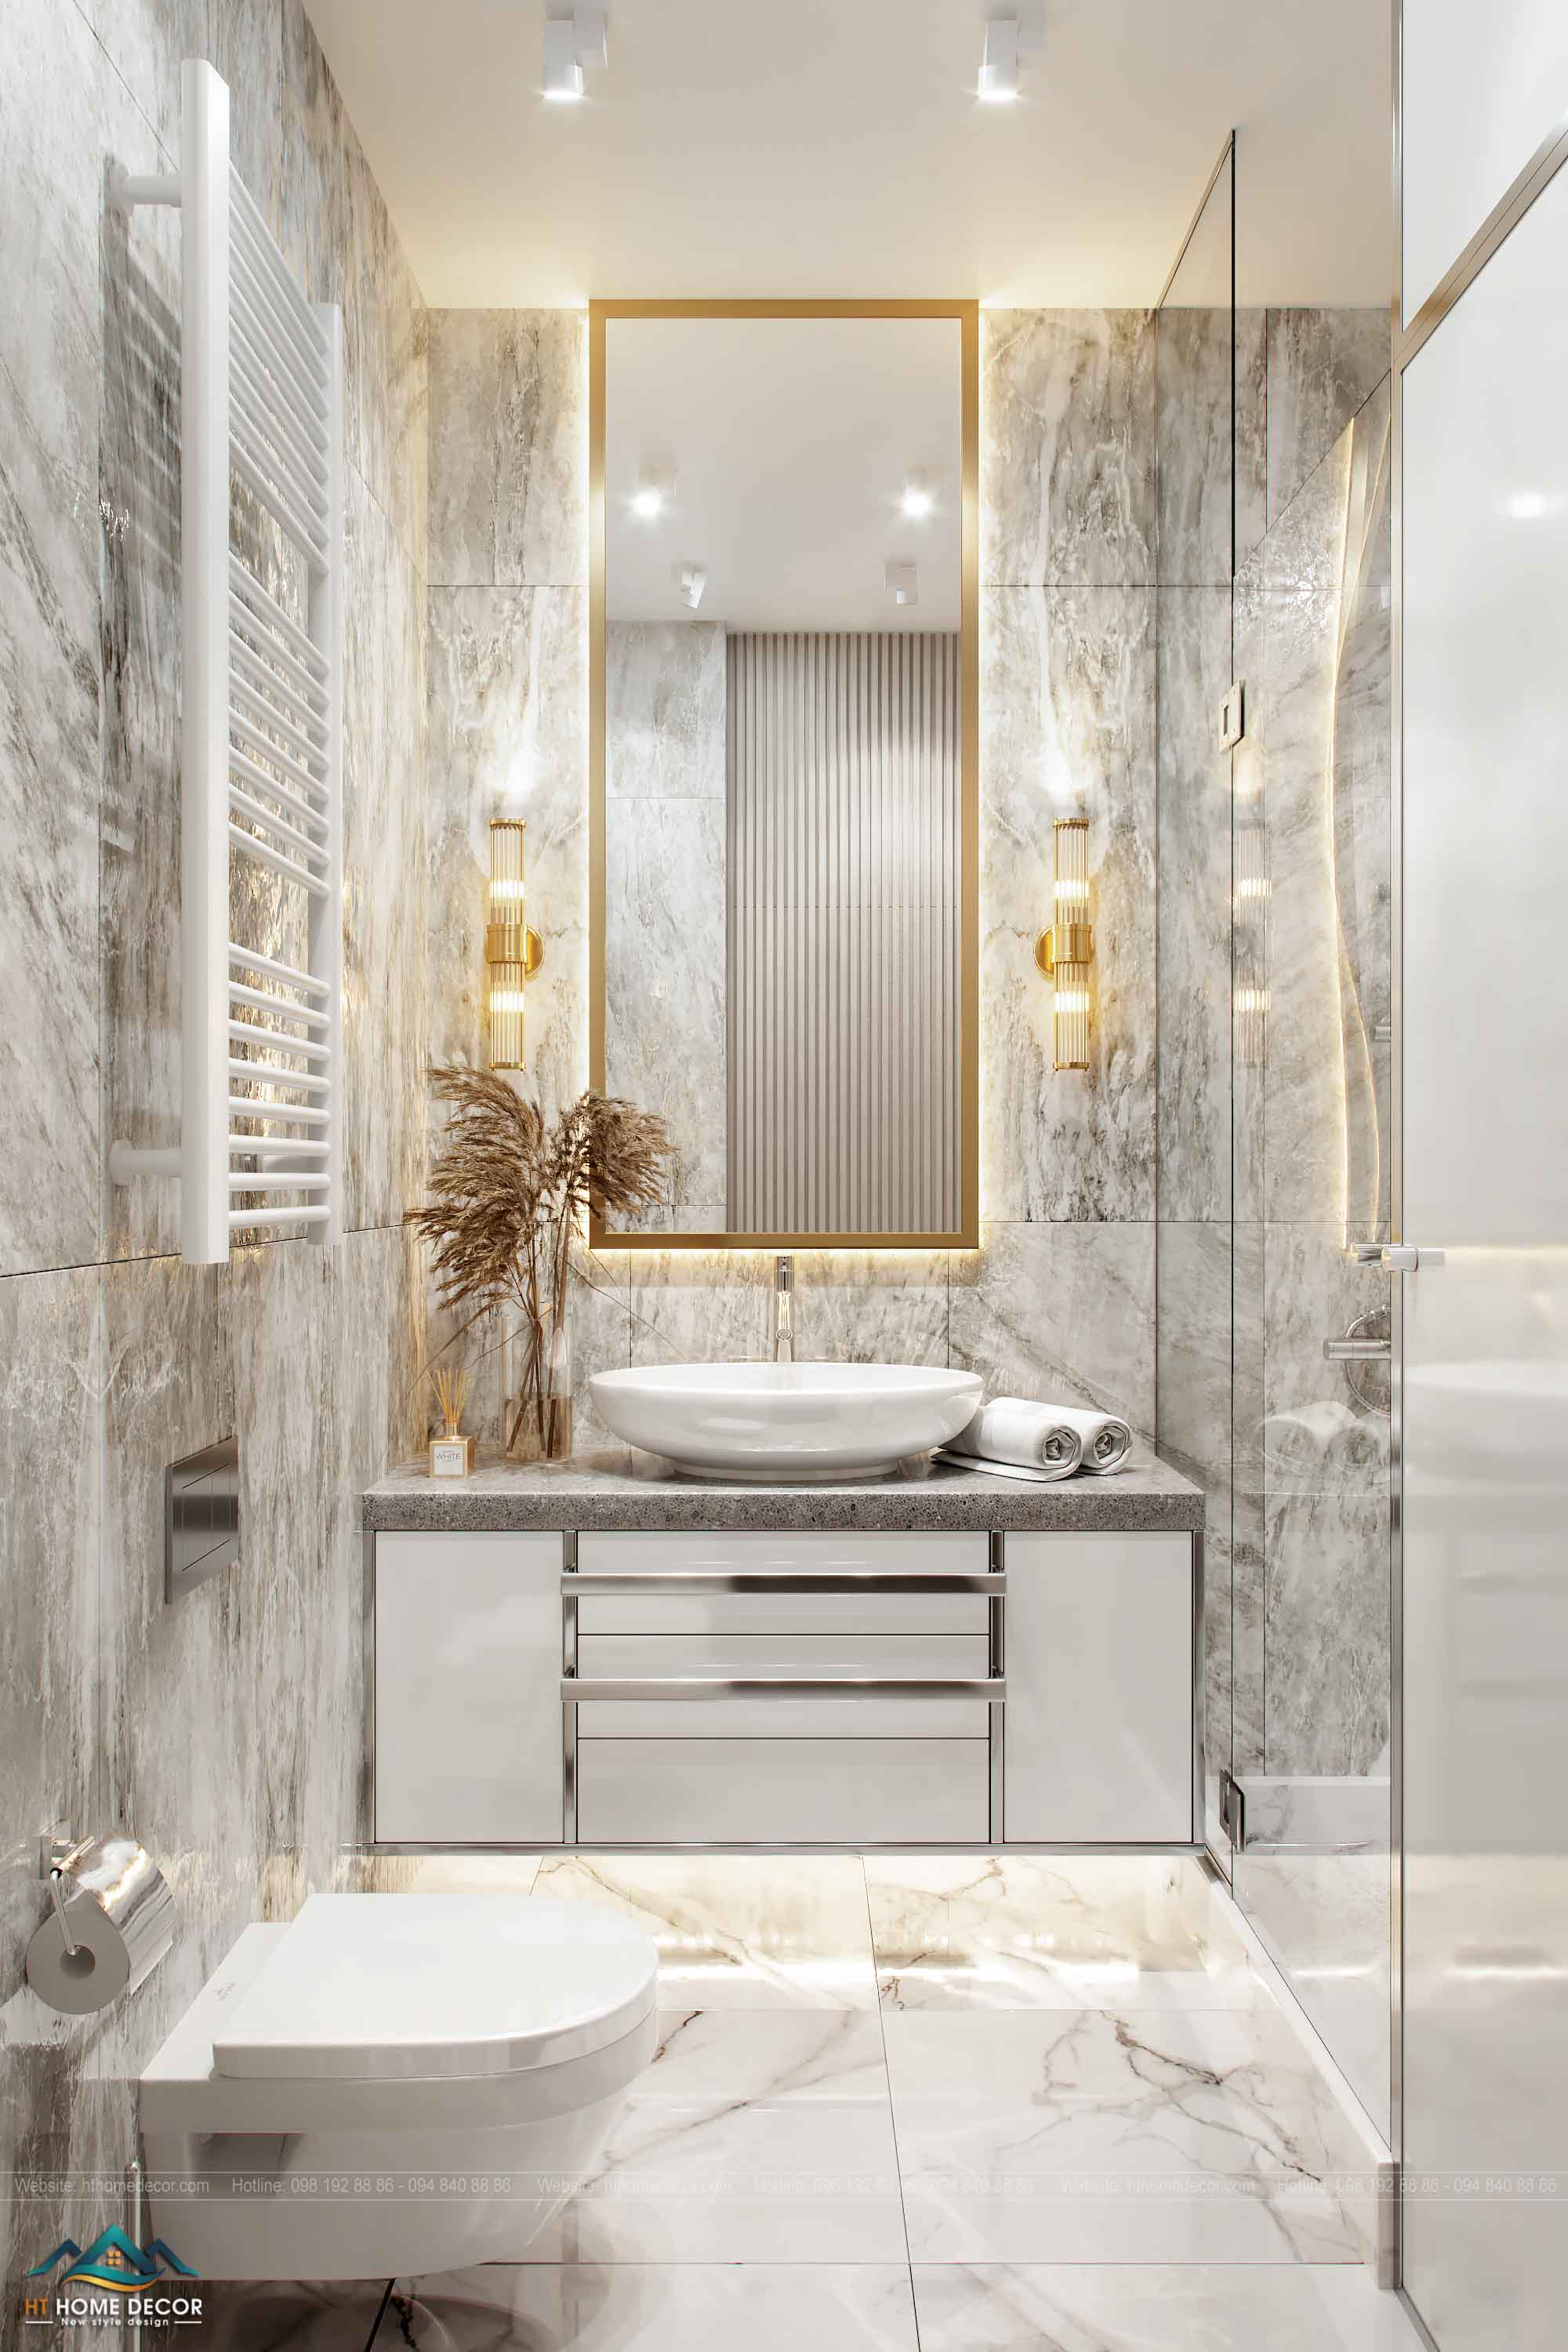 Lavabo hiện đại và đơn giản. Phía dưới có một tủ đa chức năng. Phòng tắm có gương lớn được đóng khung bằng đồng rất đẹp. Lót sàn và ốp tường bằng gạch sứ màu sáng và xám làm cho ánh sáng bên trong được tăng thêm.